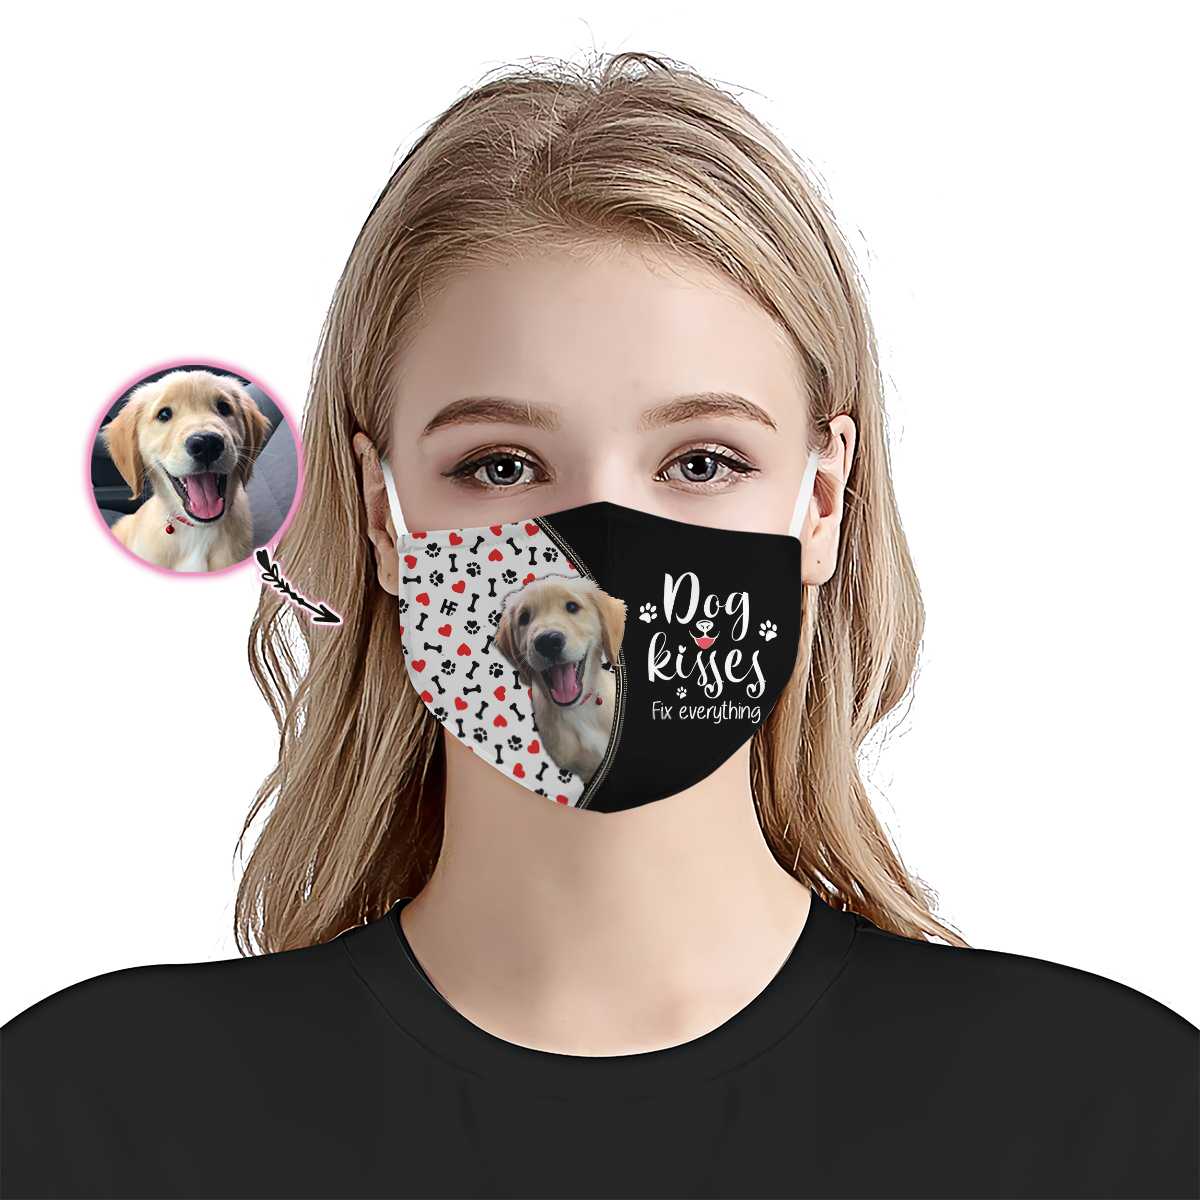 Dog kisses fix everything custom image face mask